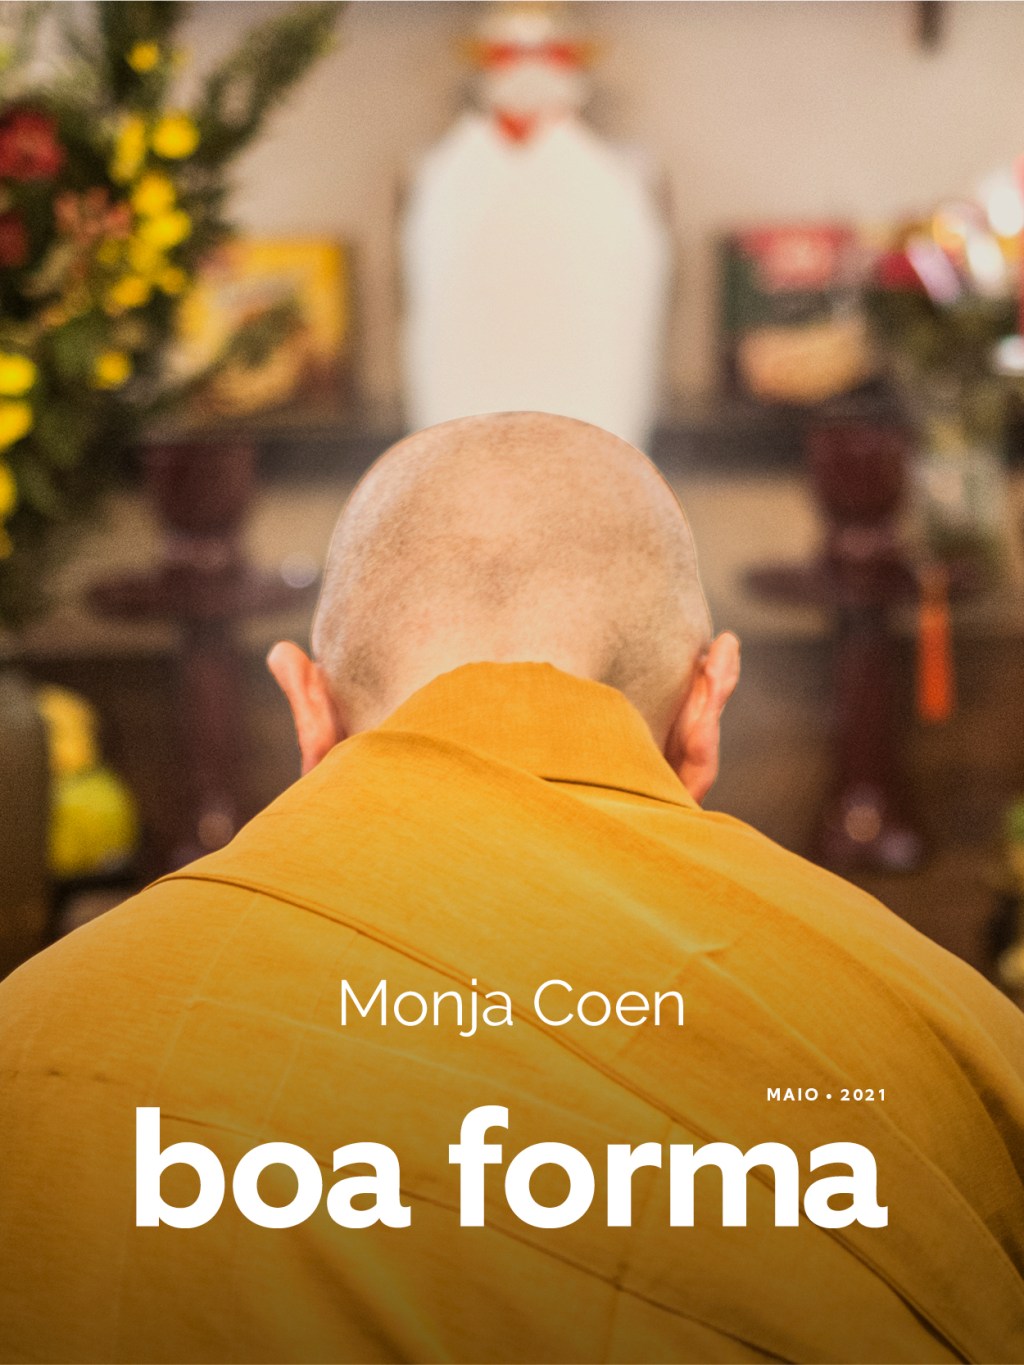 Monja Coen: capa da edição de maio de BOA FORMA